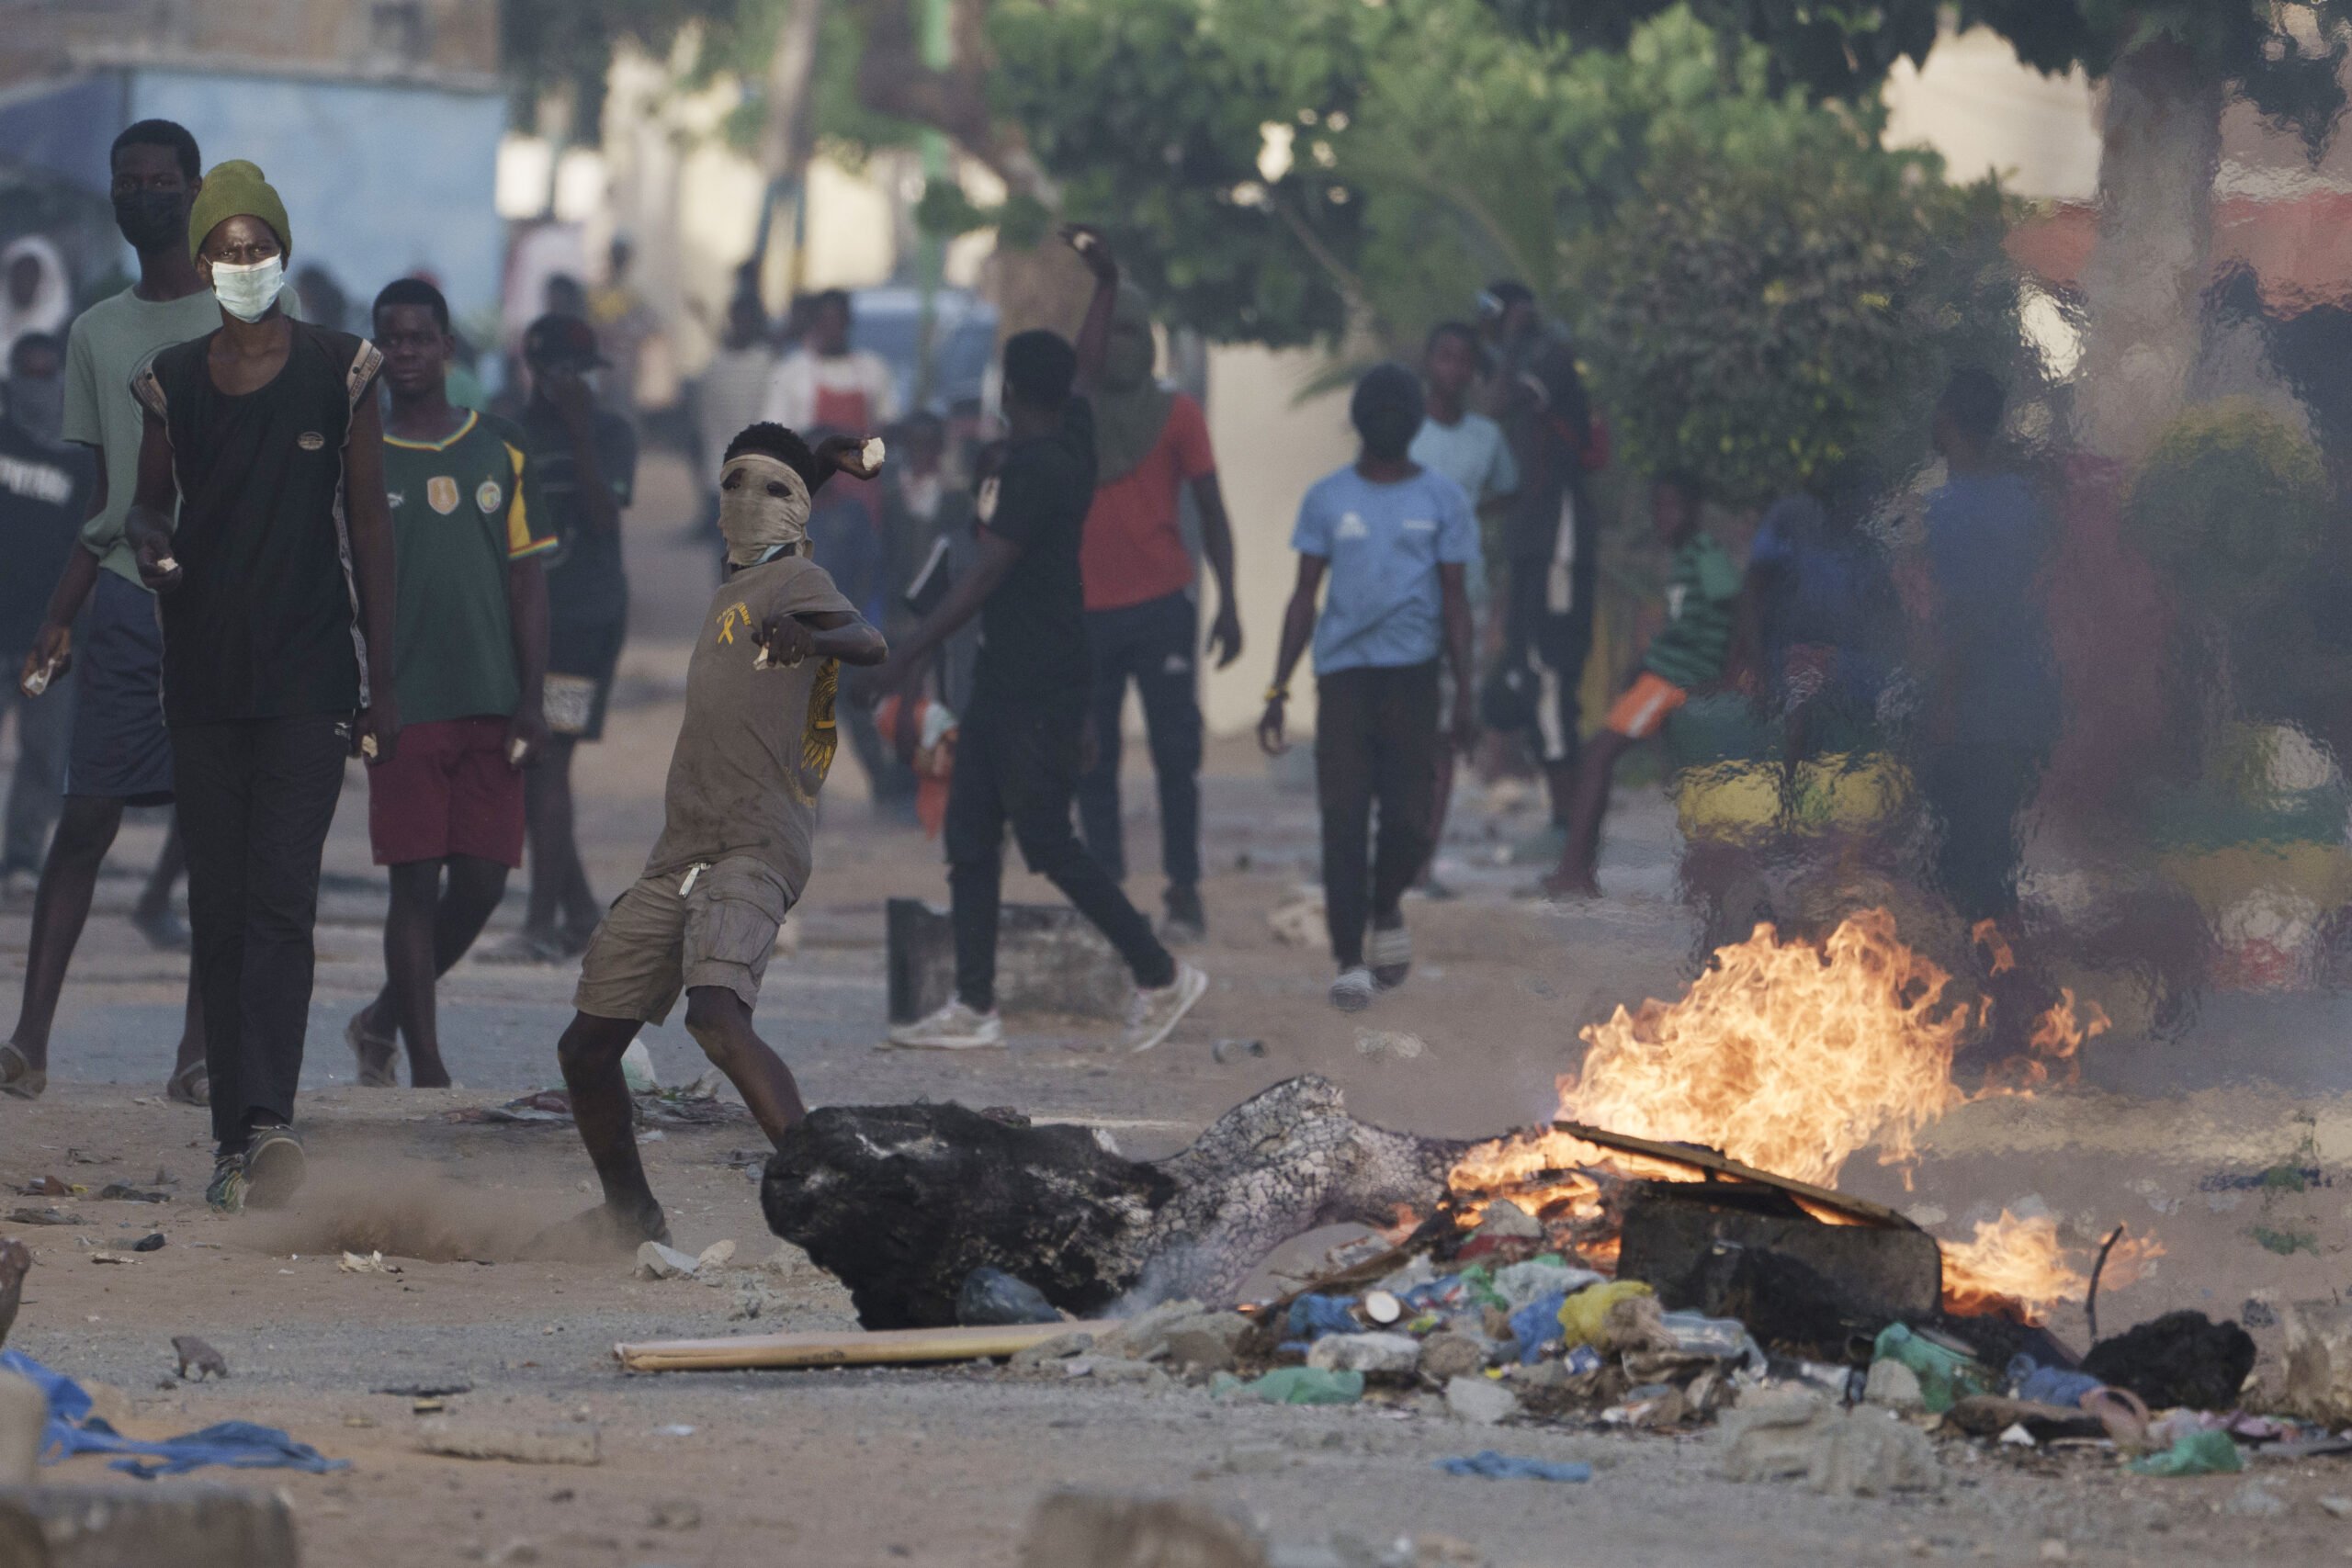 Σενεγάλη: Τρίτη νύκτα συγκρούσεων μεταξύ υποστηρικτών της αντιπολίτευσης και  αστυνομίας – Έφτασαν τους 15 οι νεκροί